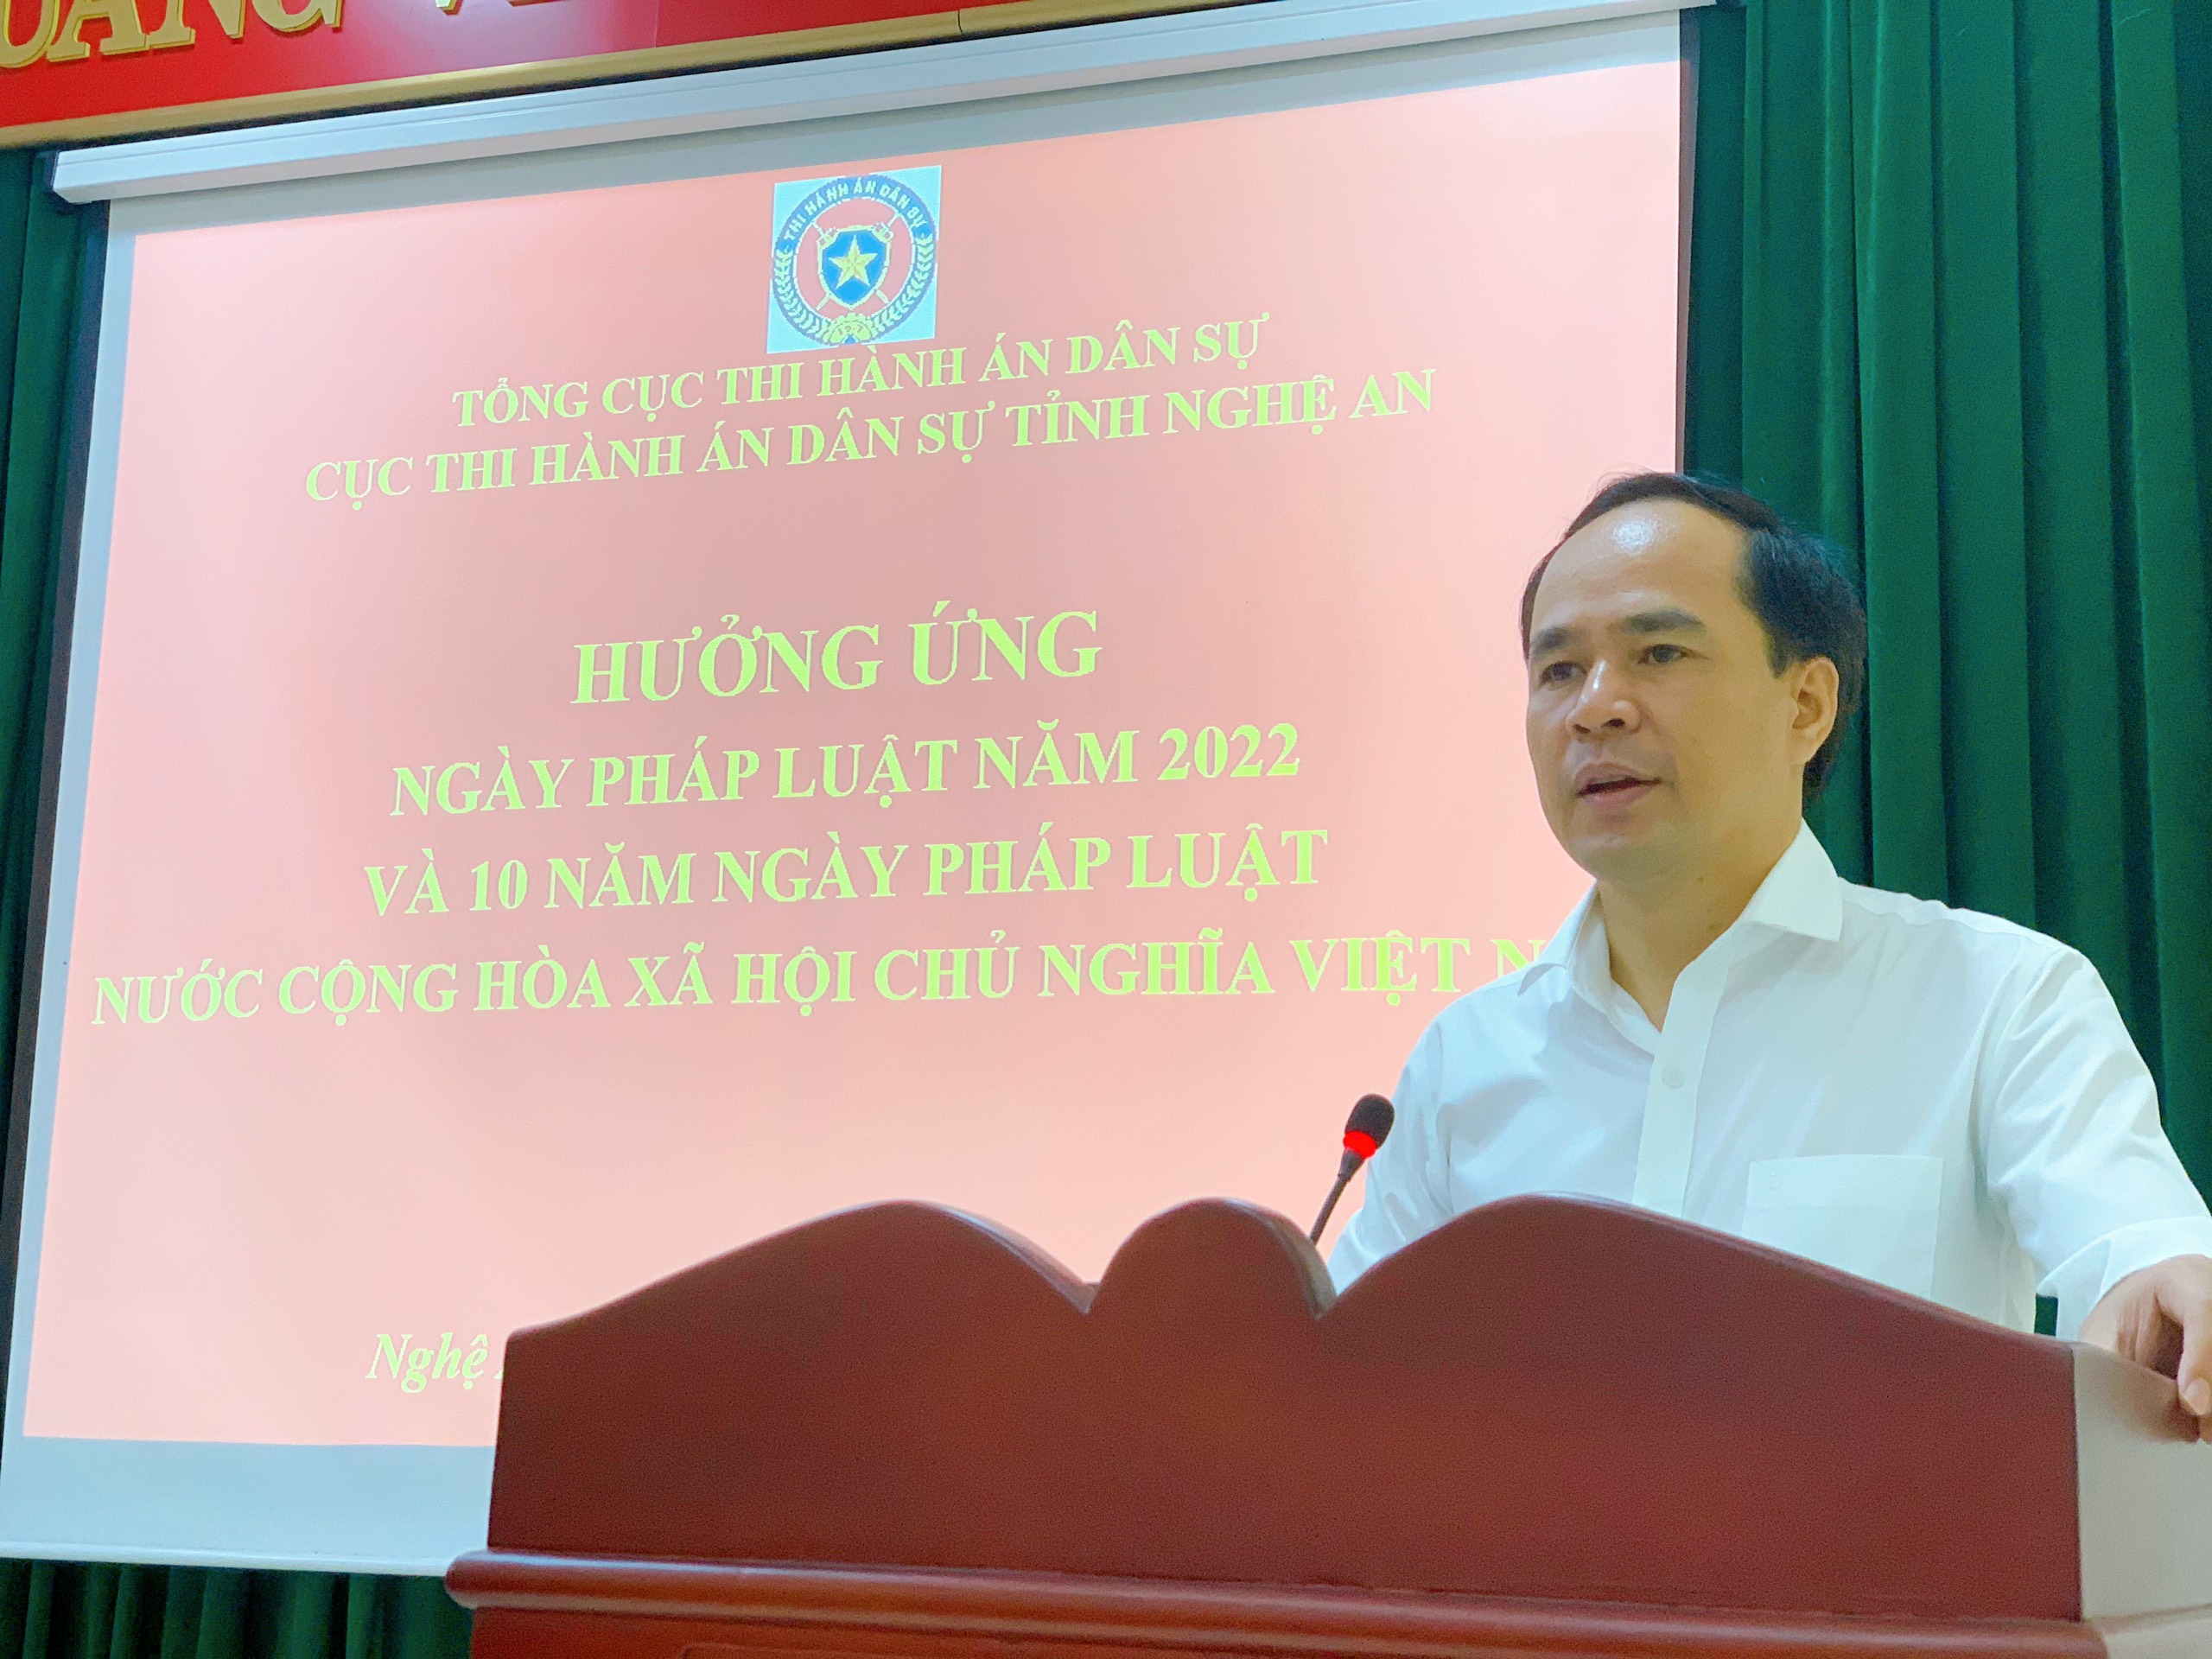 Cục Thi hành án dân sự tỉnh Nghệ An Hưởng ứng Ngày pháp luật năm 2022 và 10 năm  Ngày Pháp luật nước Cộng hoà xã hội chủ nghĩa Việt Nam